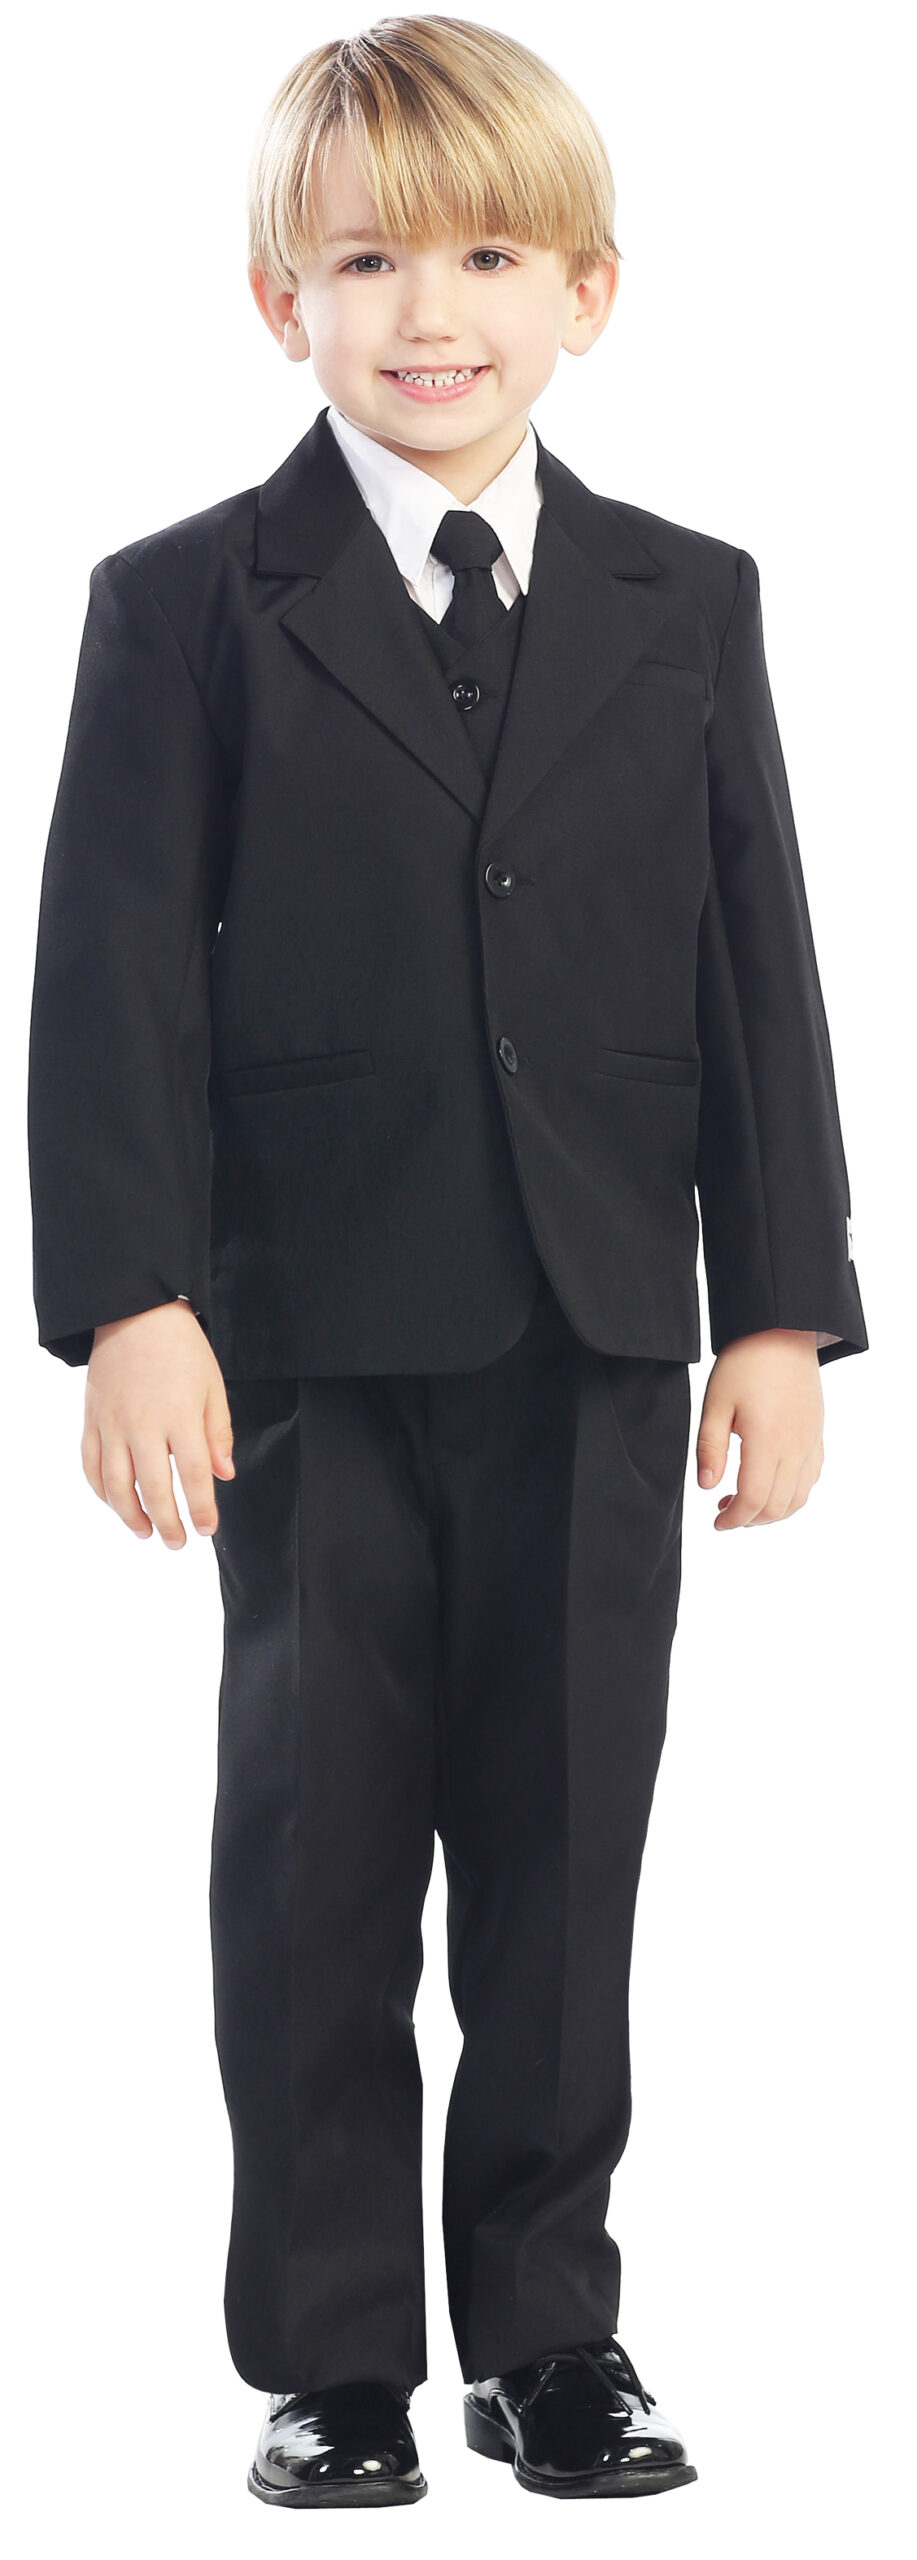 Avery Hill 5-Piece Boy's 2-Button Dress Suit Full-Back Vest - Black Size 8